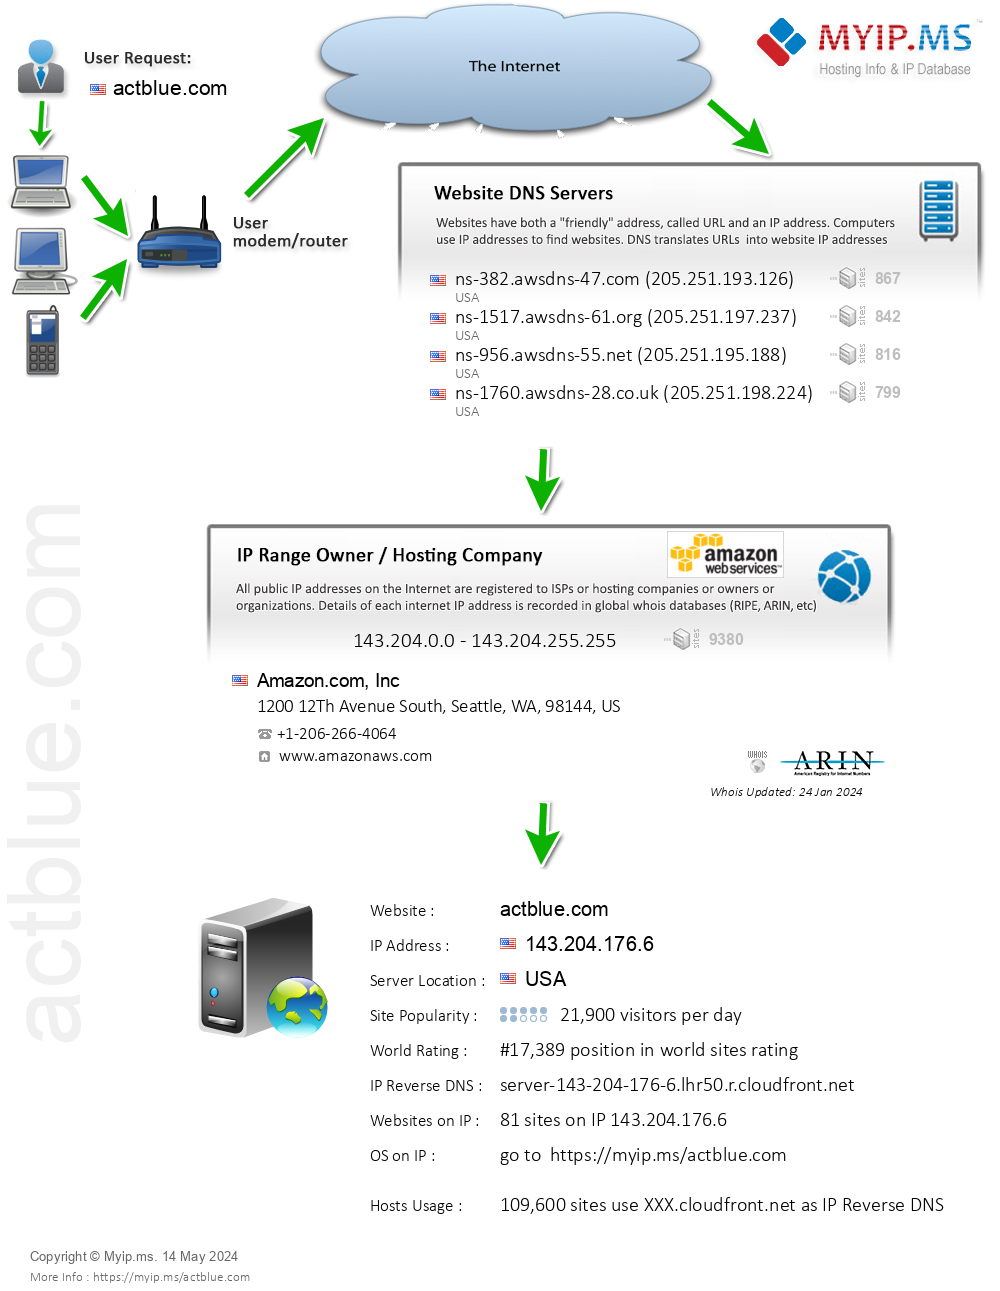 Actblue.com - Website Hosting Visual IP Diagram